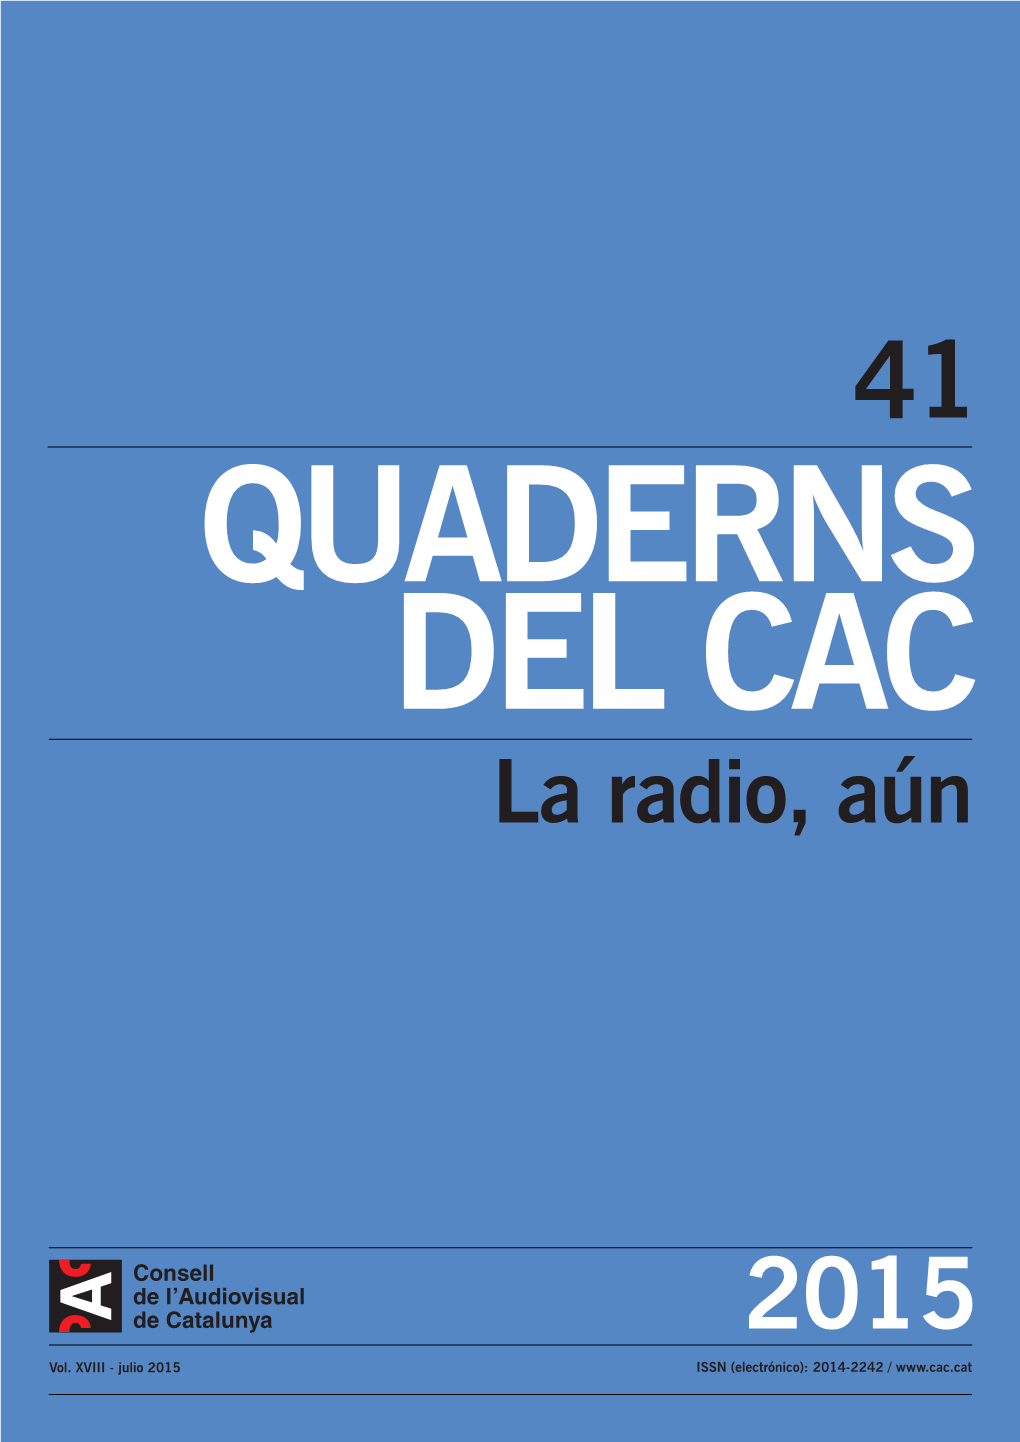 QUADERNS DEL CAC La Radio, Aún